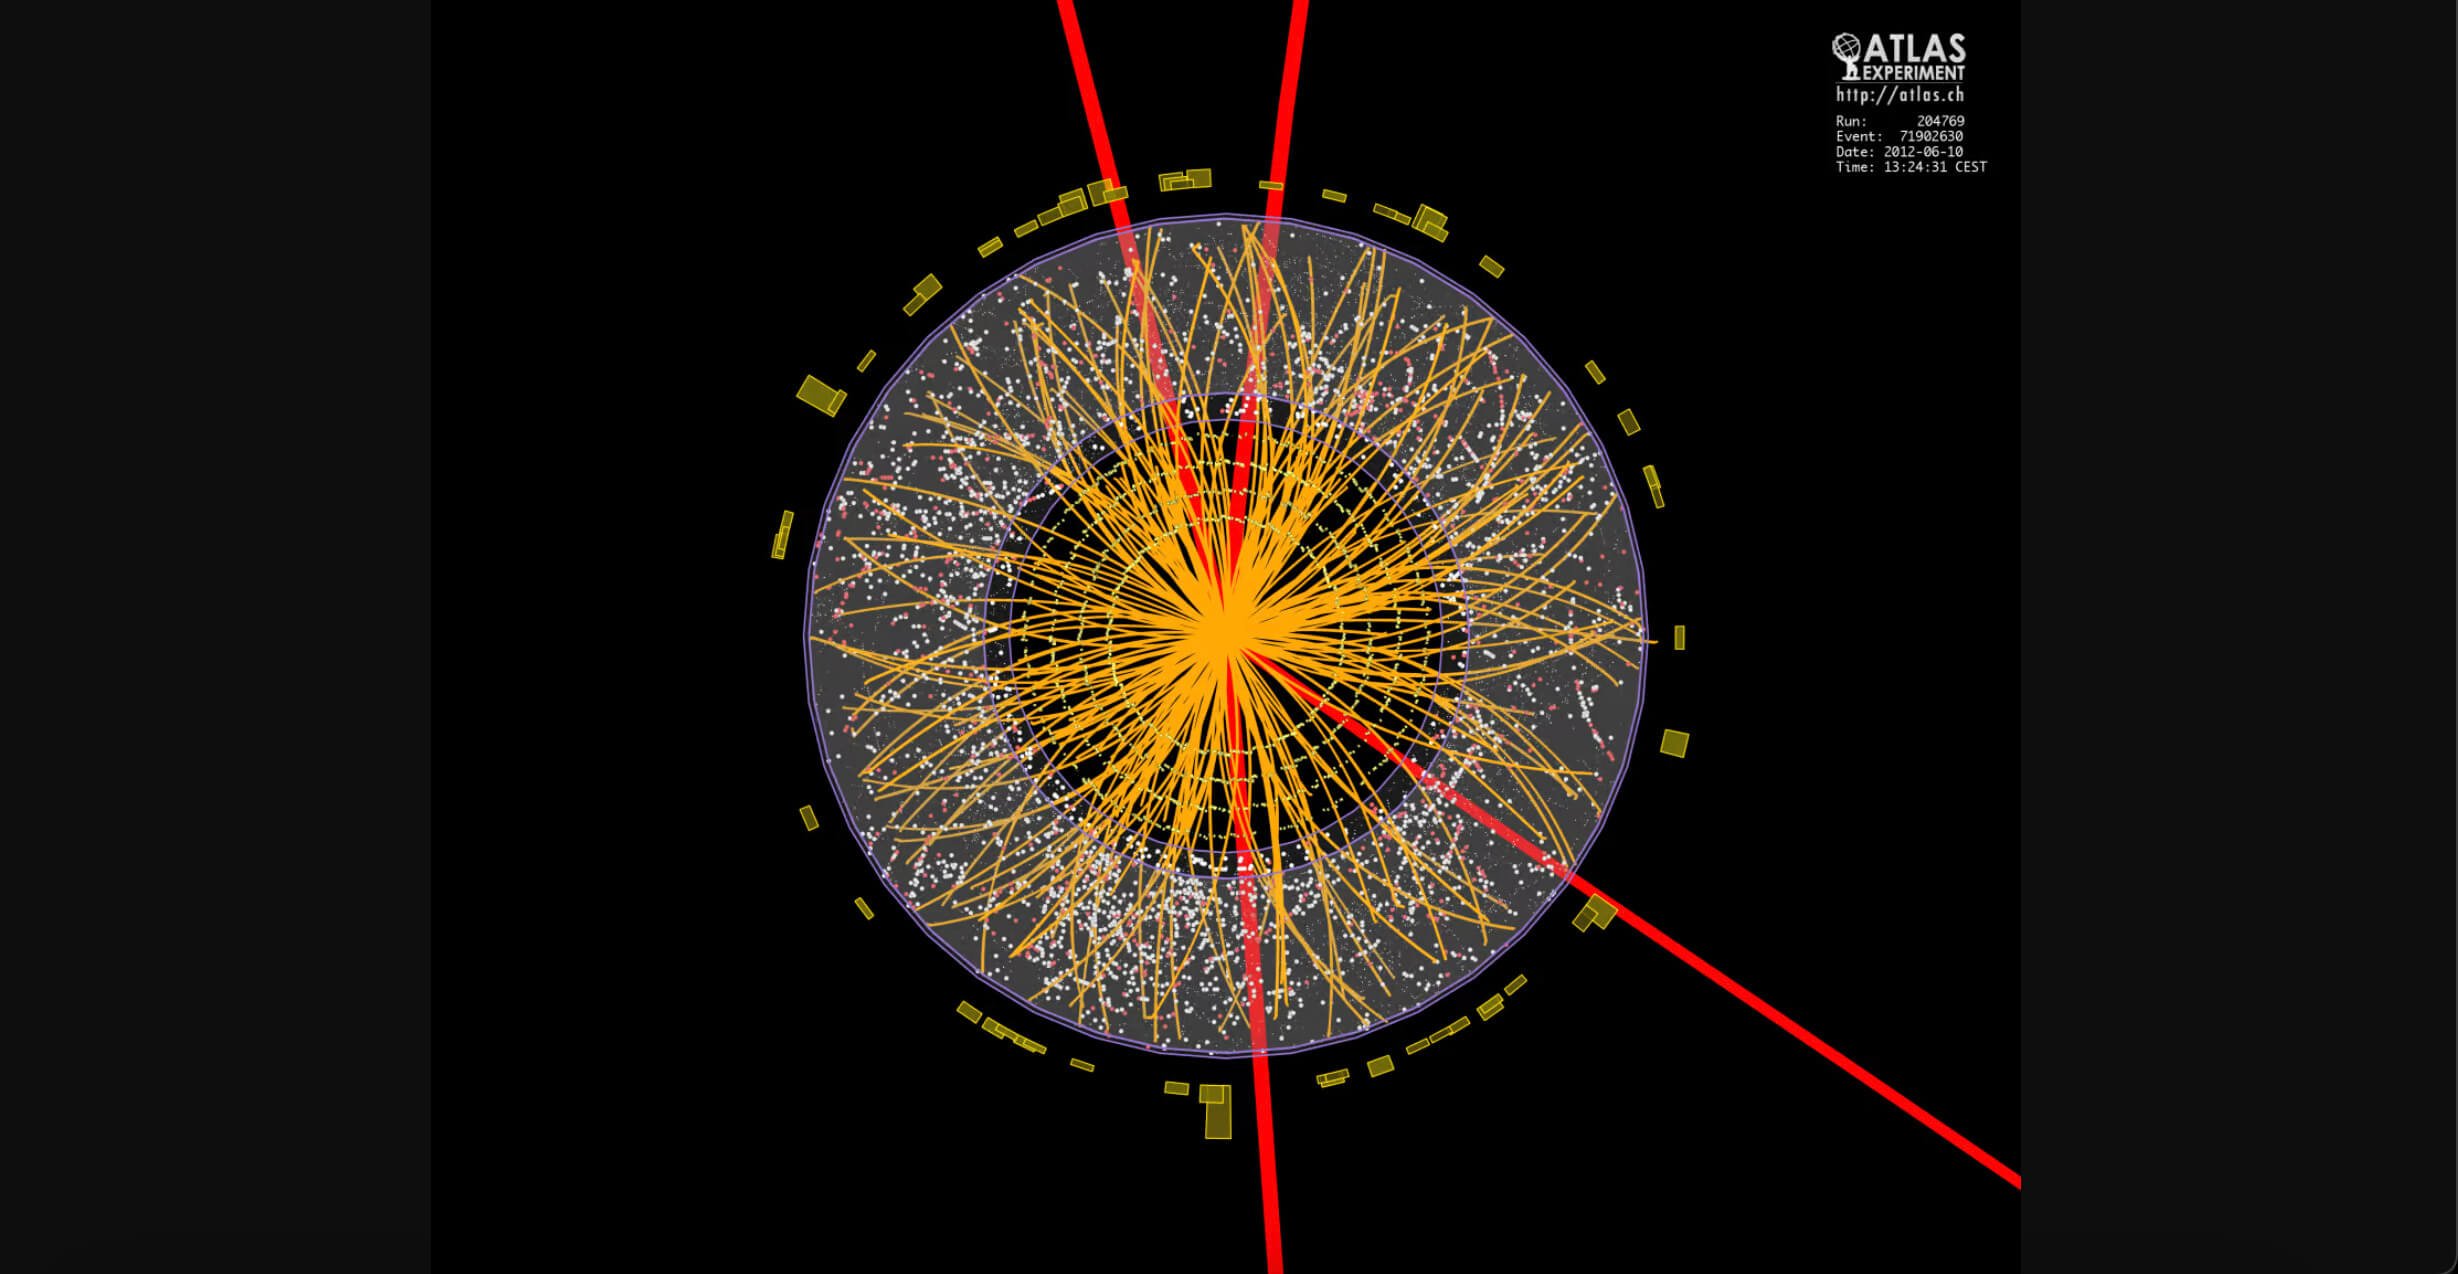 Как бозон Хиггса помогает раскрывать тайны Вселенной? Бозон Хиггса – фундаментальная частица, открыть которую удалось всего 12 лет назад. Изображение: assets.newatlas.com. Фото.